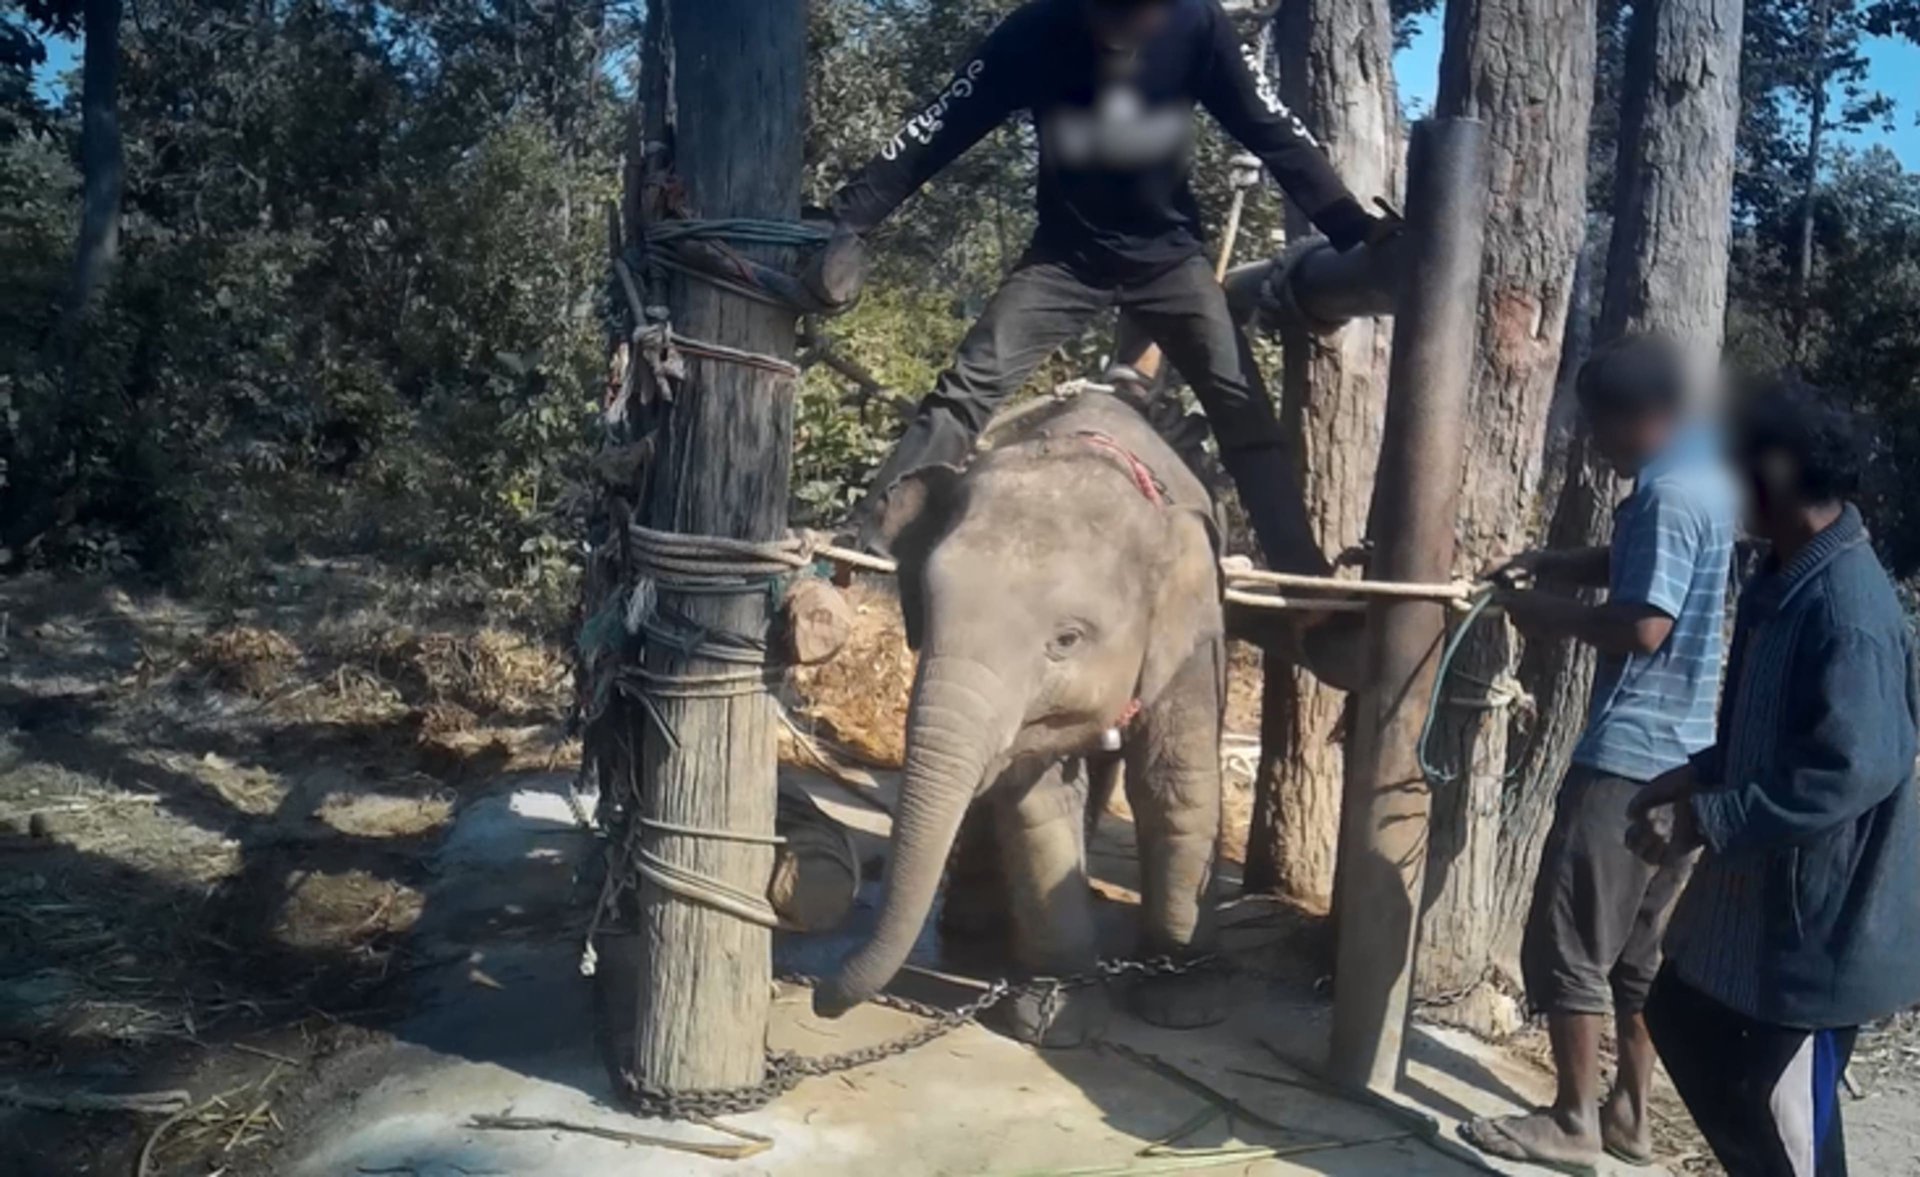 Elefante sendo cruelmente treinado para carregar turistas na Índia